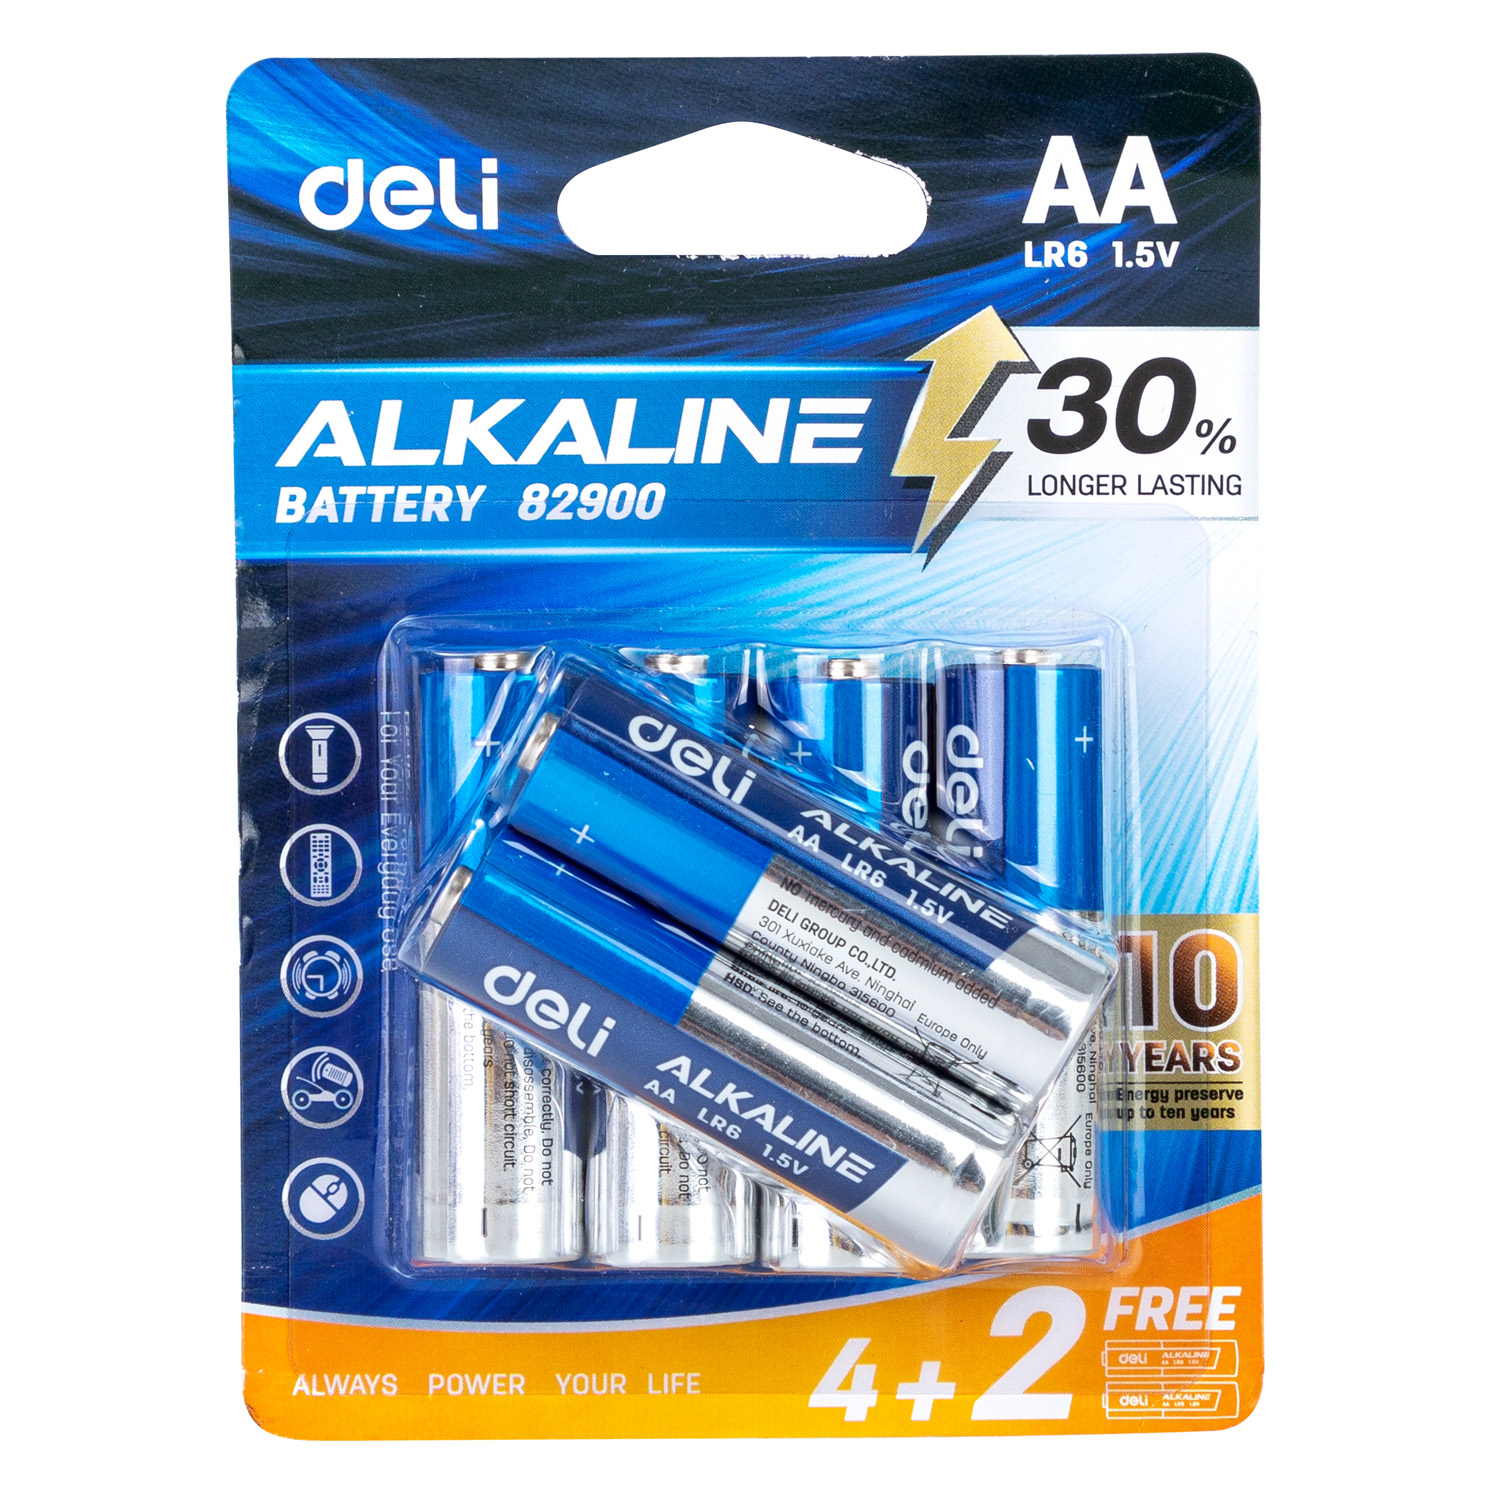 Deli-E82900 Alkaline Battery